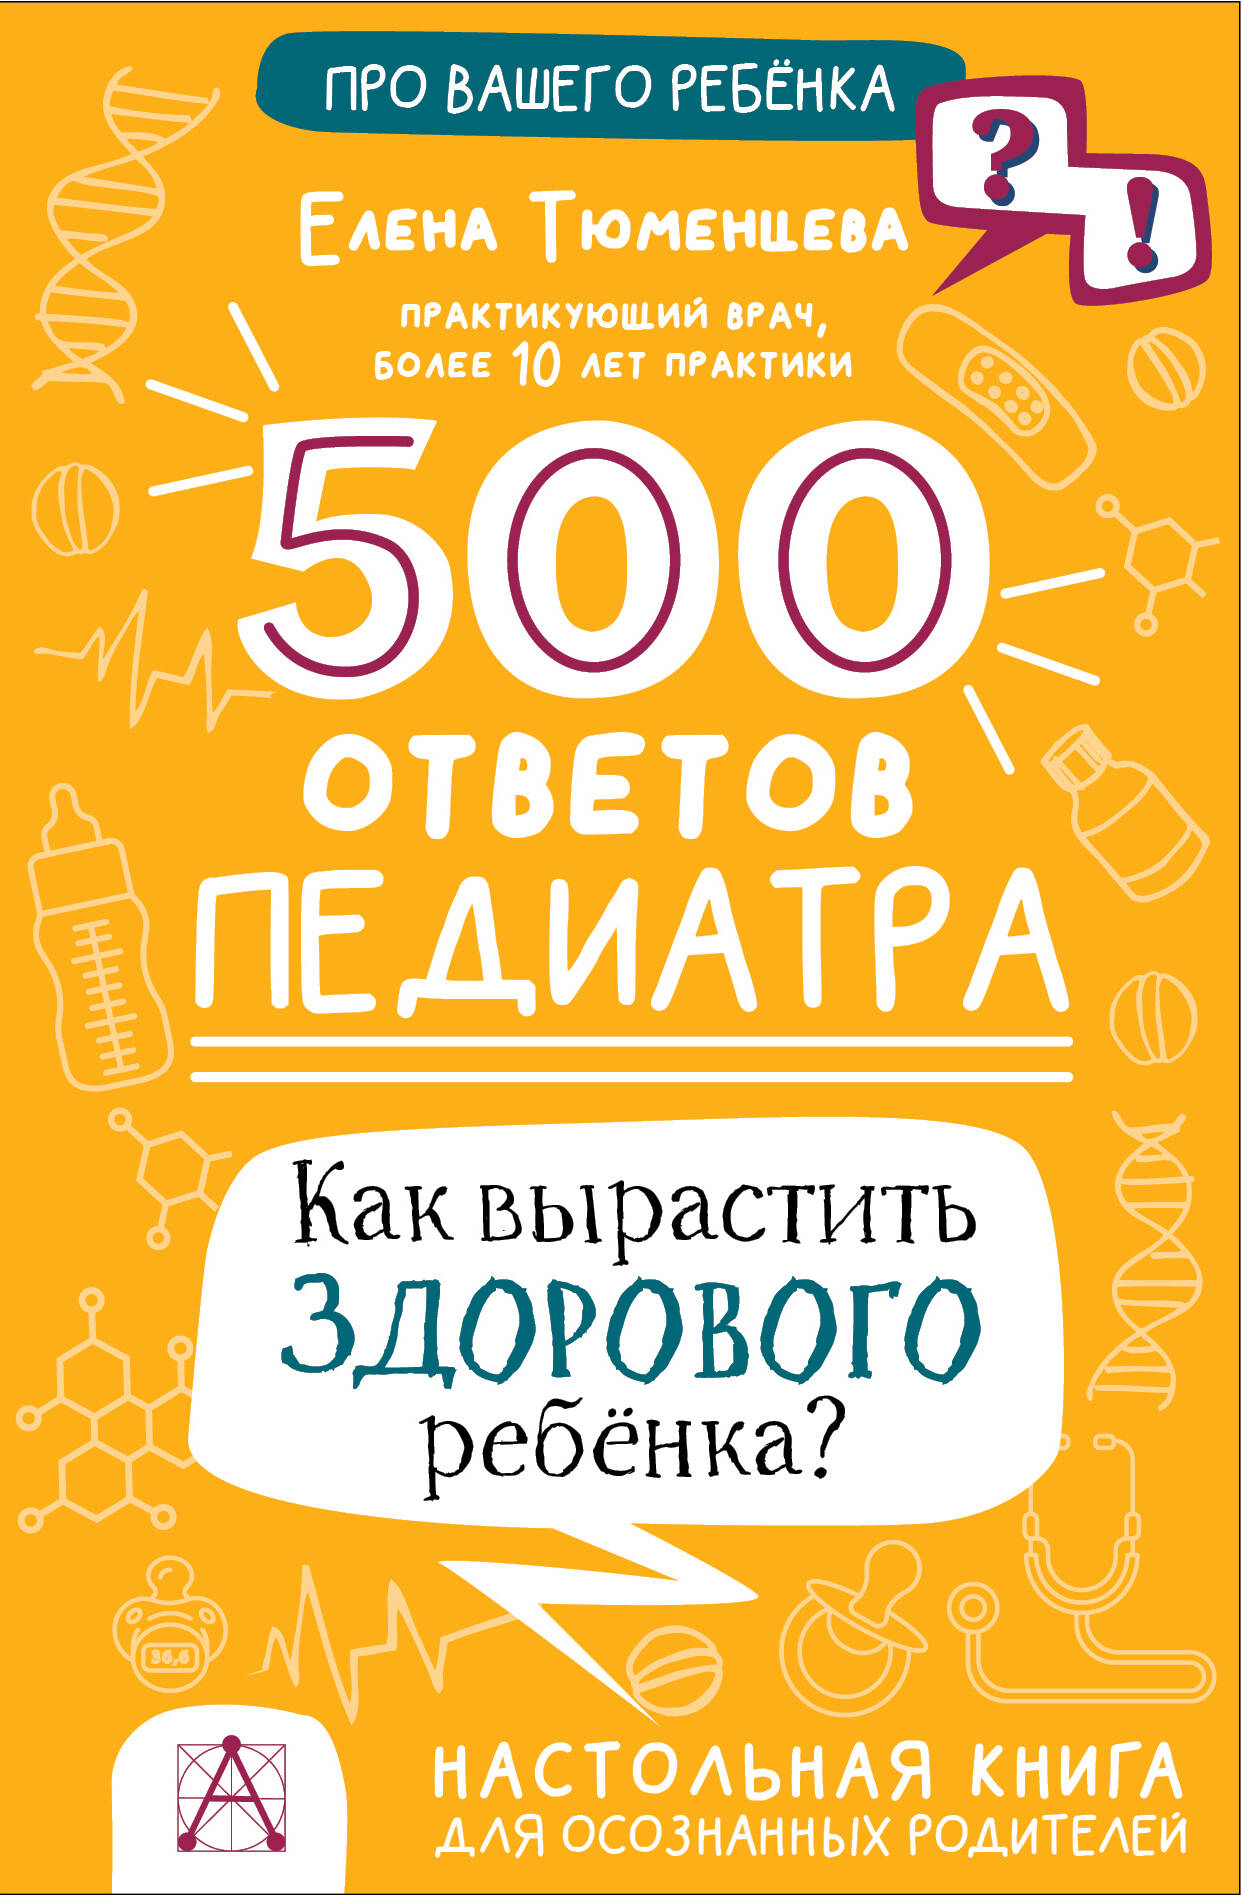 как вырастить здорового ребенка Тюменцева Елена Николаевна 500 ответов педиатра. Как вырастить здорового ребенка?